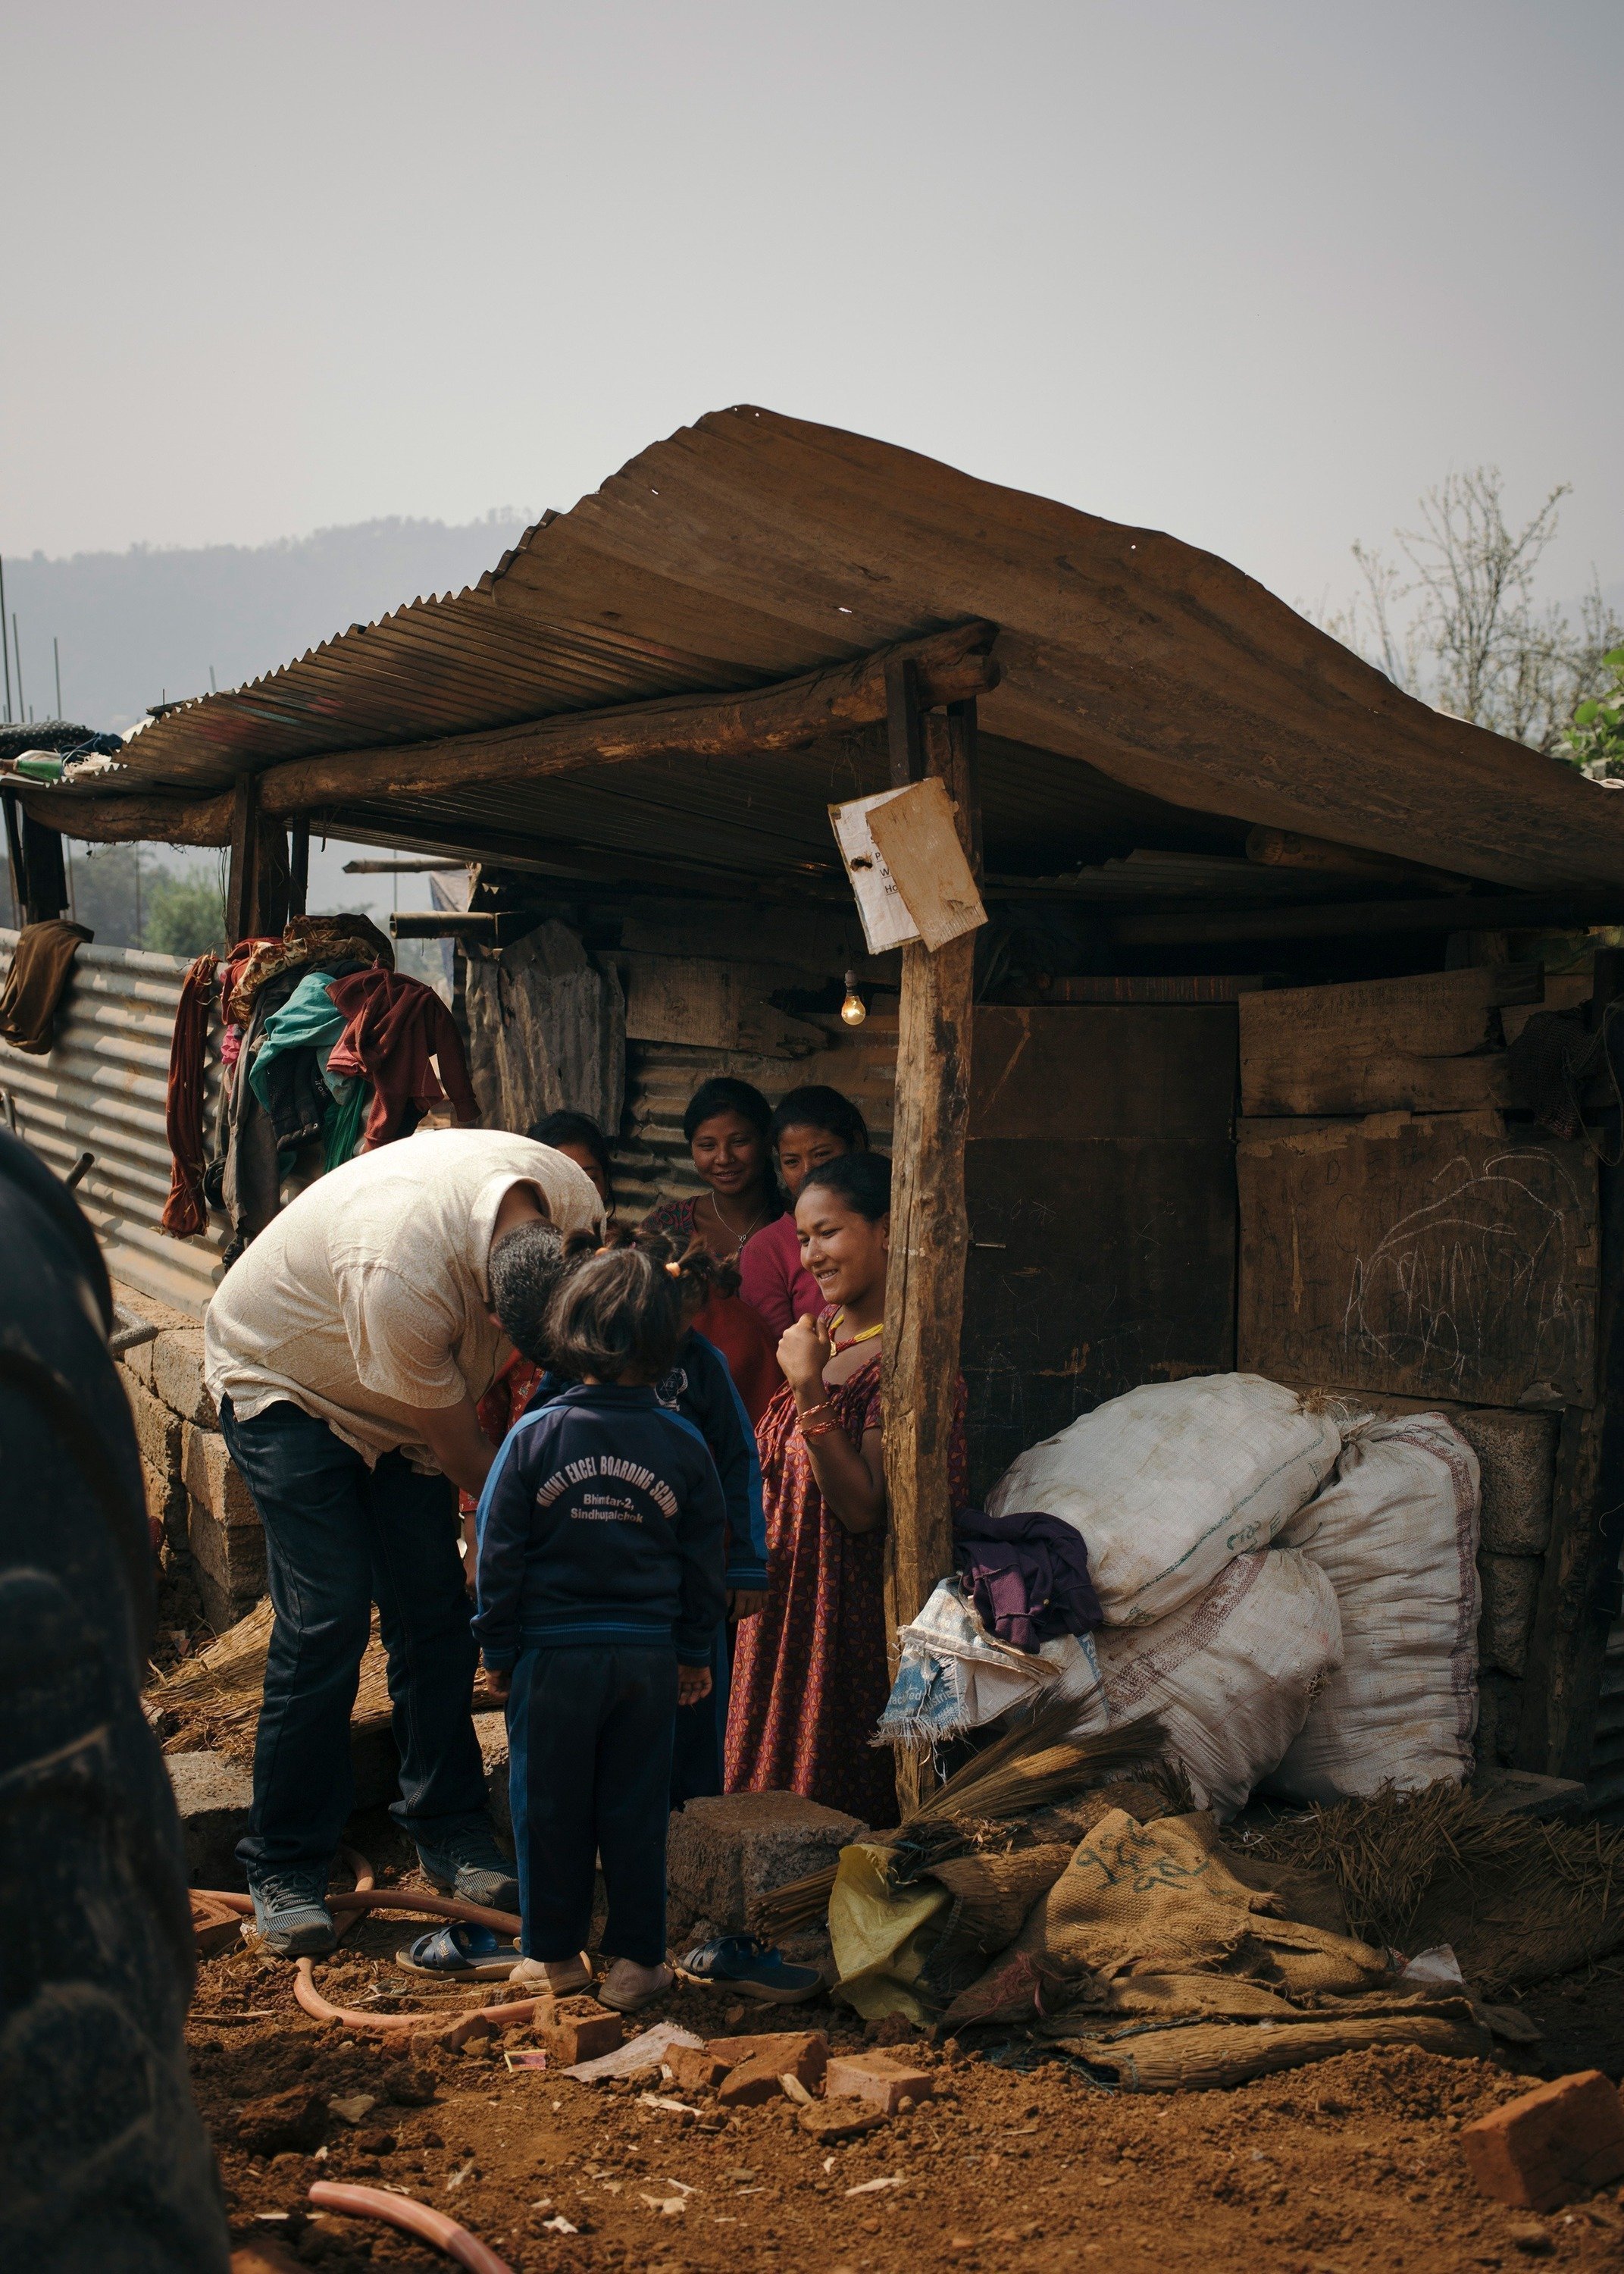 Situazione di una famiglia povera in Nepal in una capanna di legno.